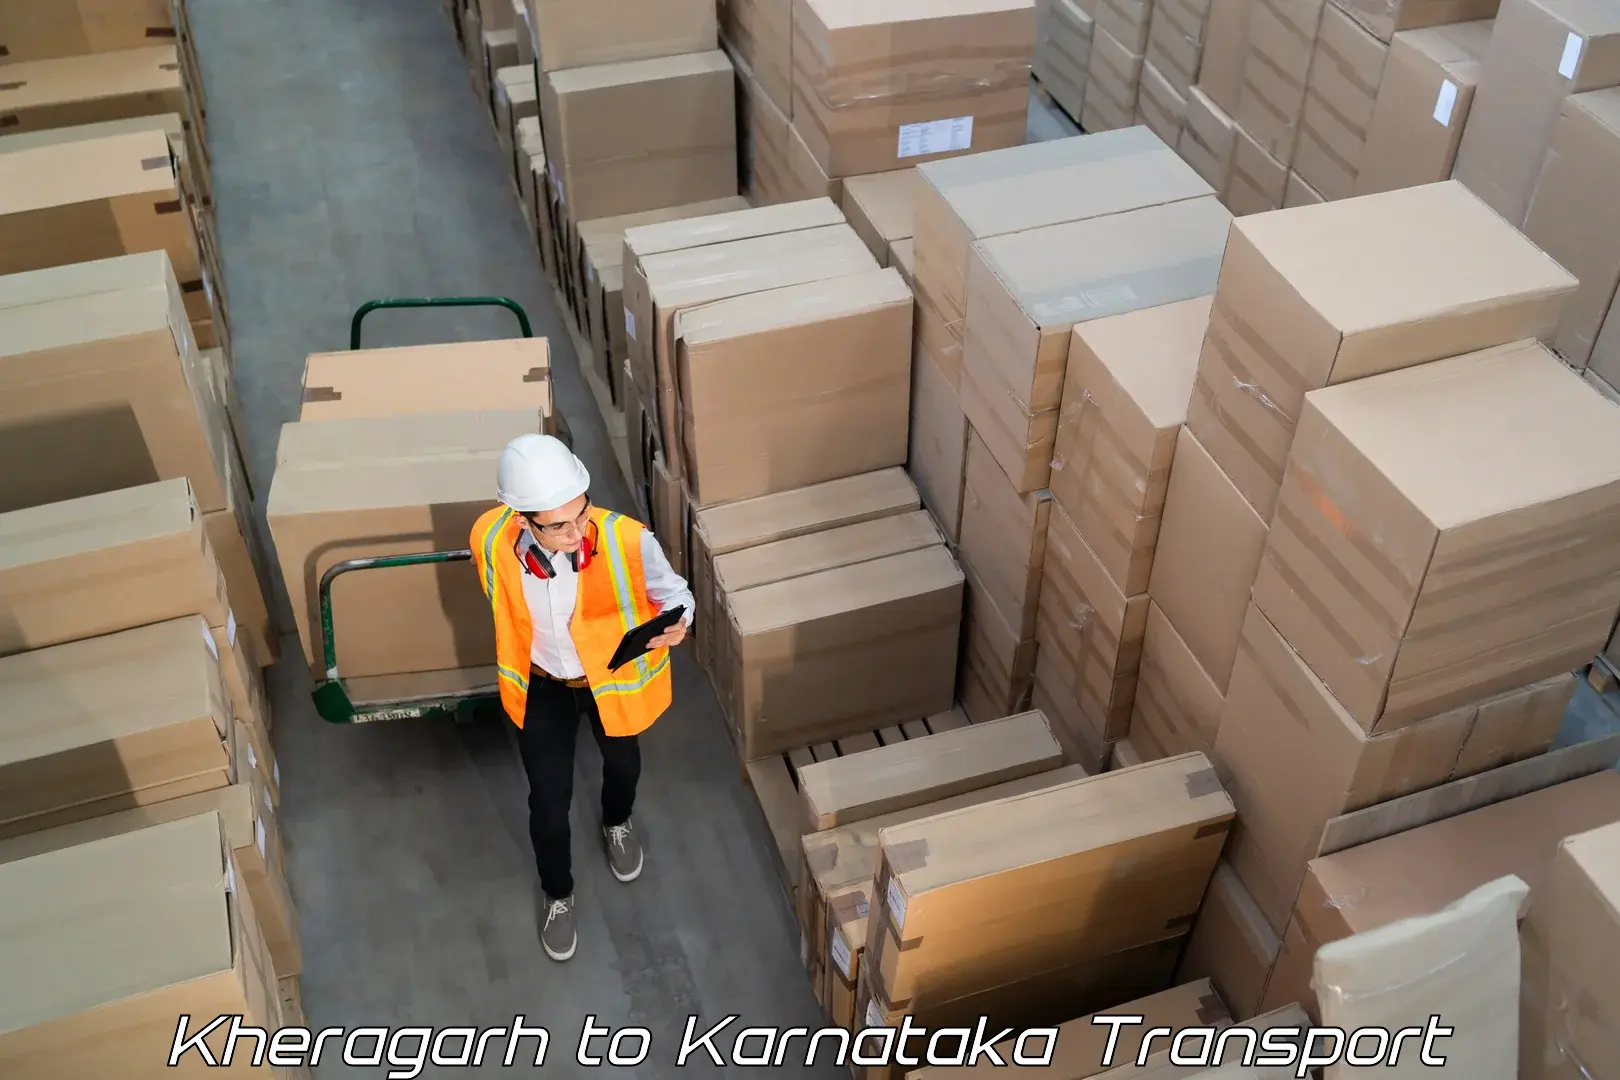 Truck transport companies in India Kheragarh to Karnataka